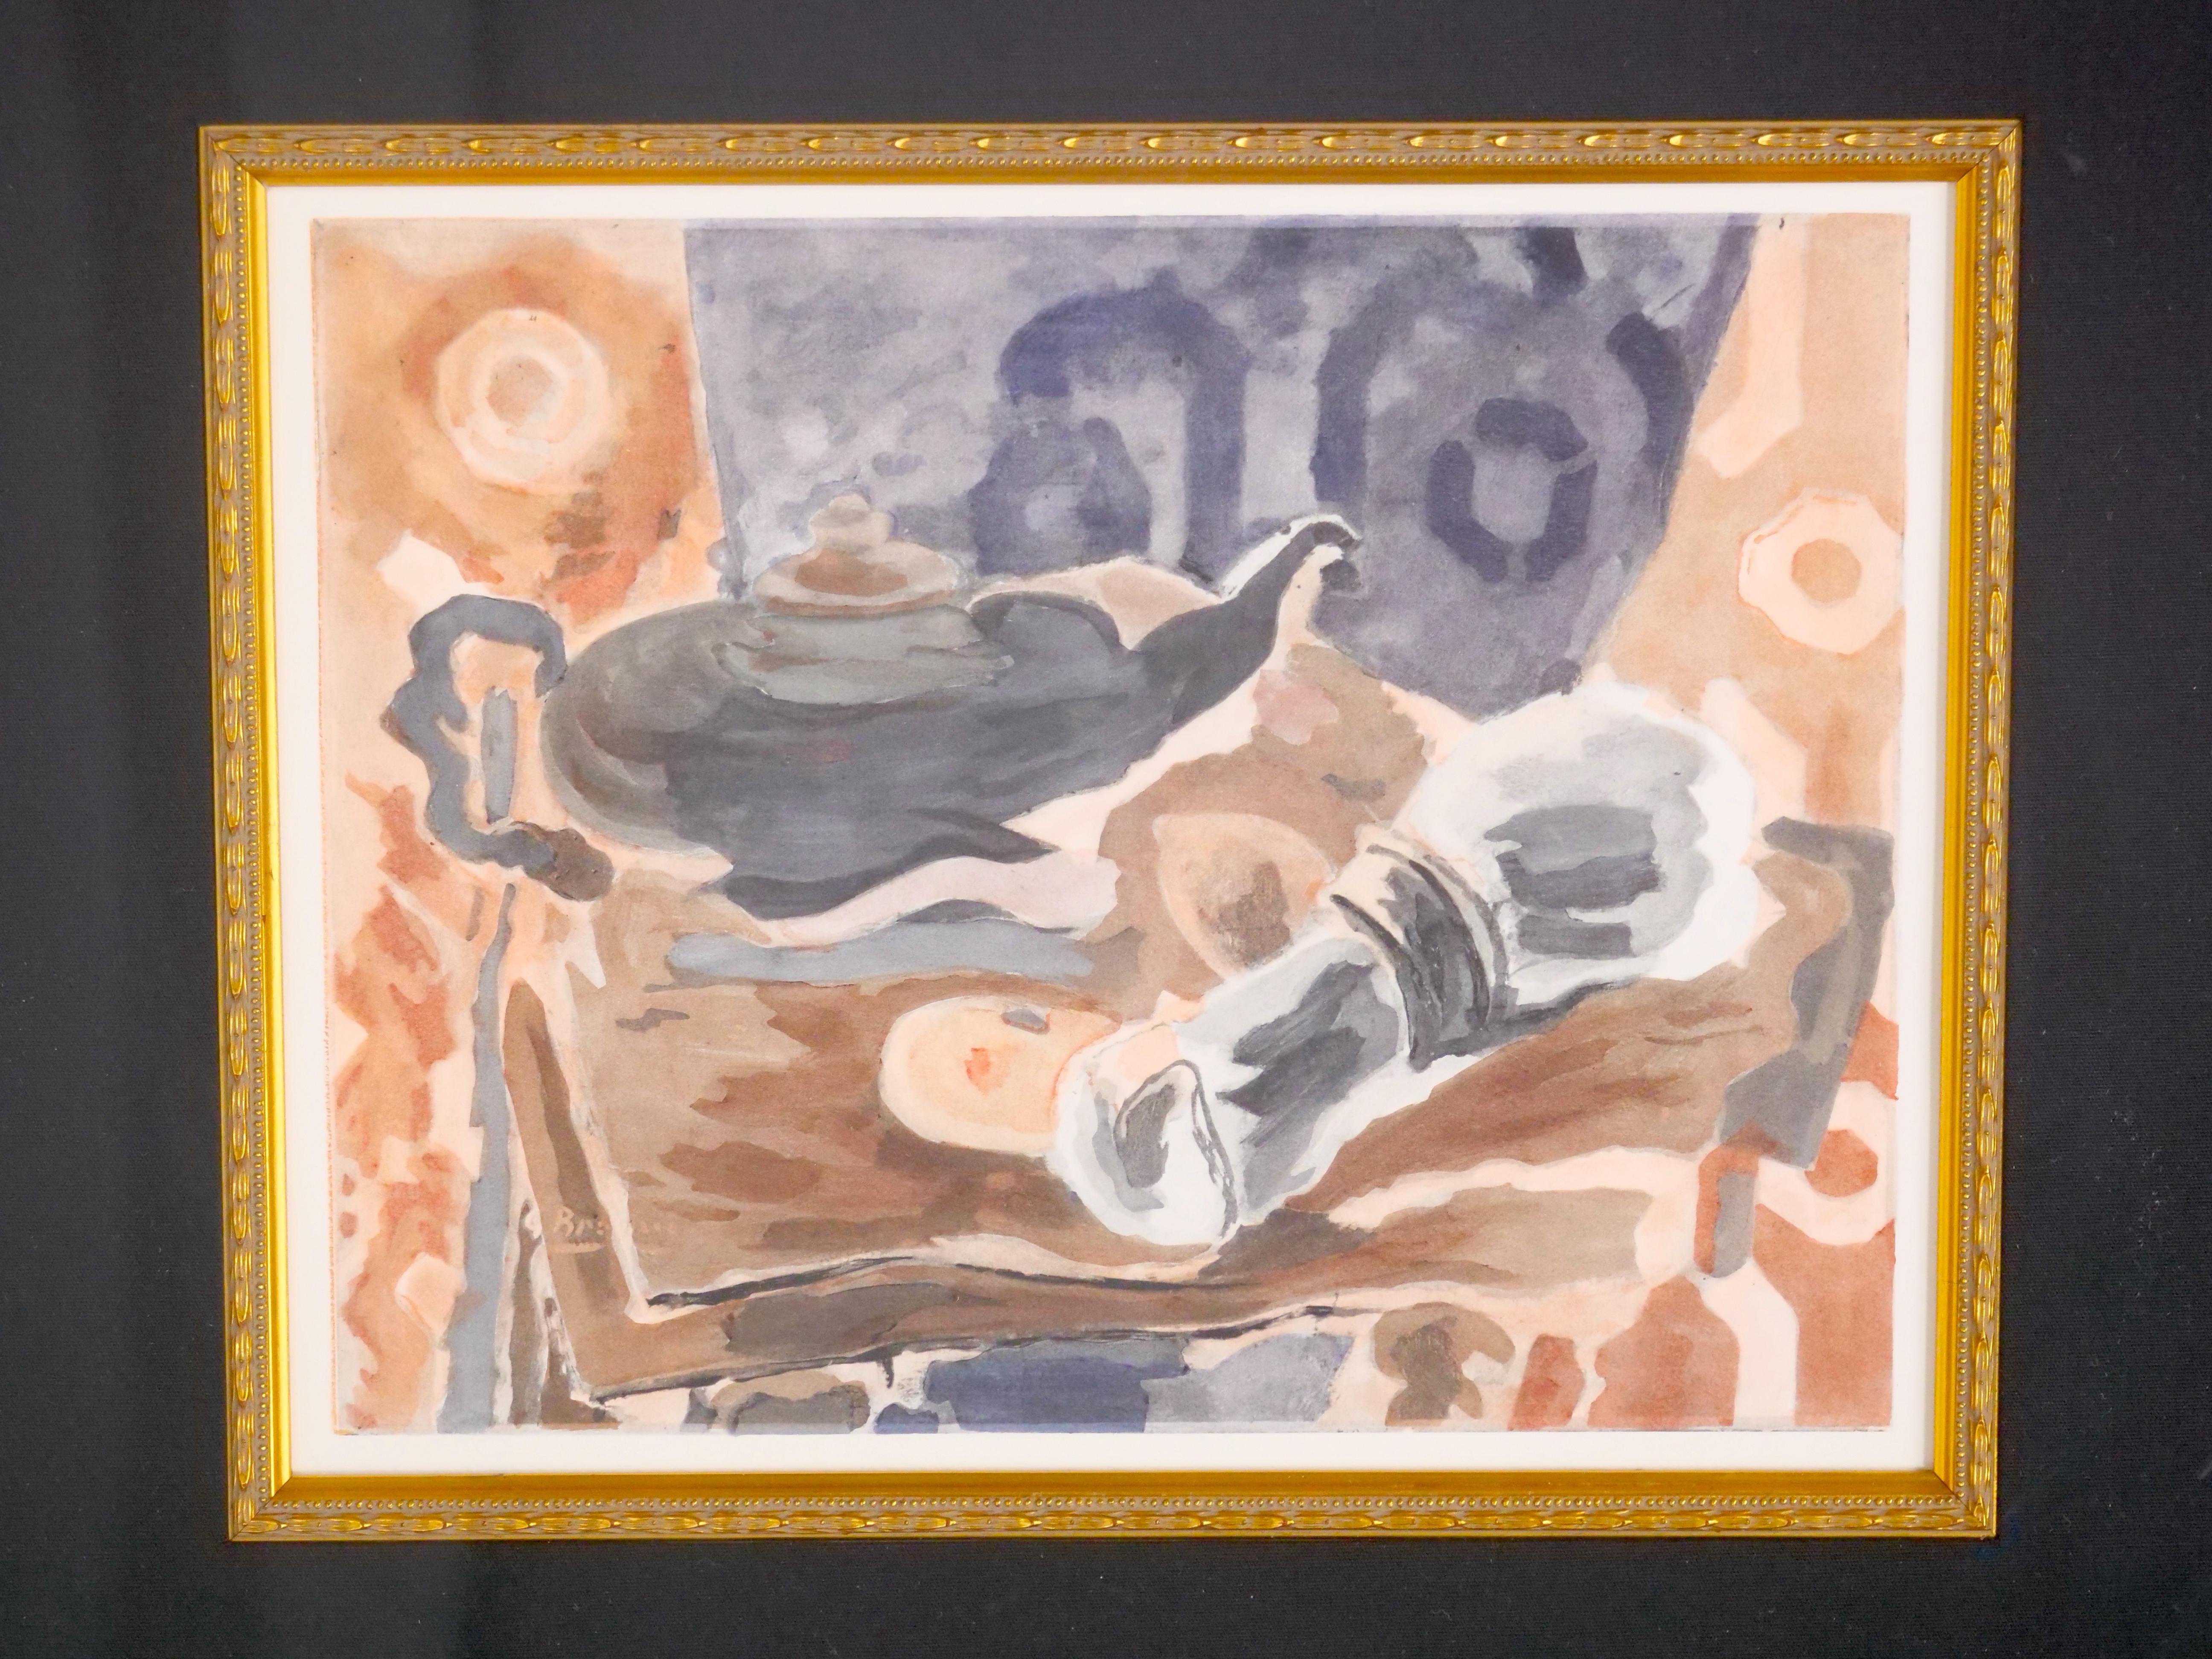 Werten Sie Ihre Kunstsammlung mit dieser exquisiten, vergoldeten, holzgerahmten Lithografie des berühmten Künstlers George Braque mit dem Titel 